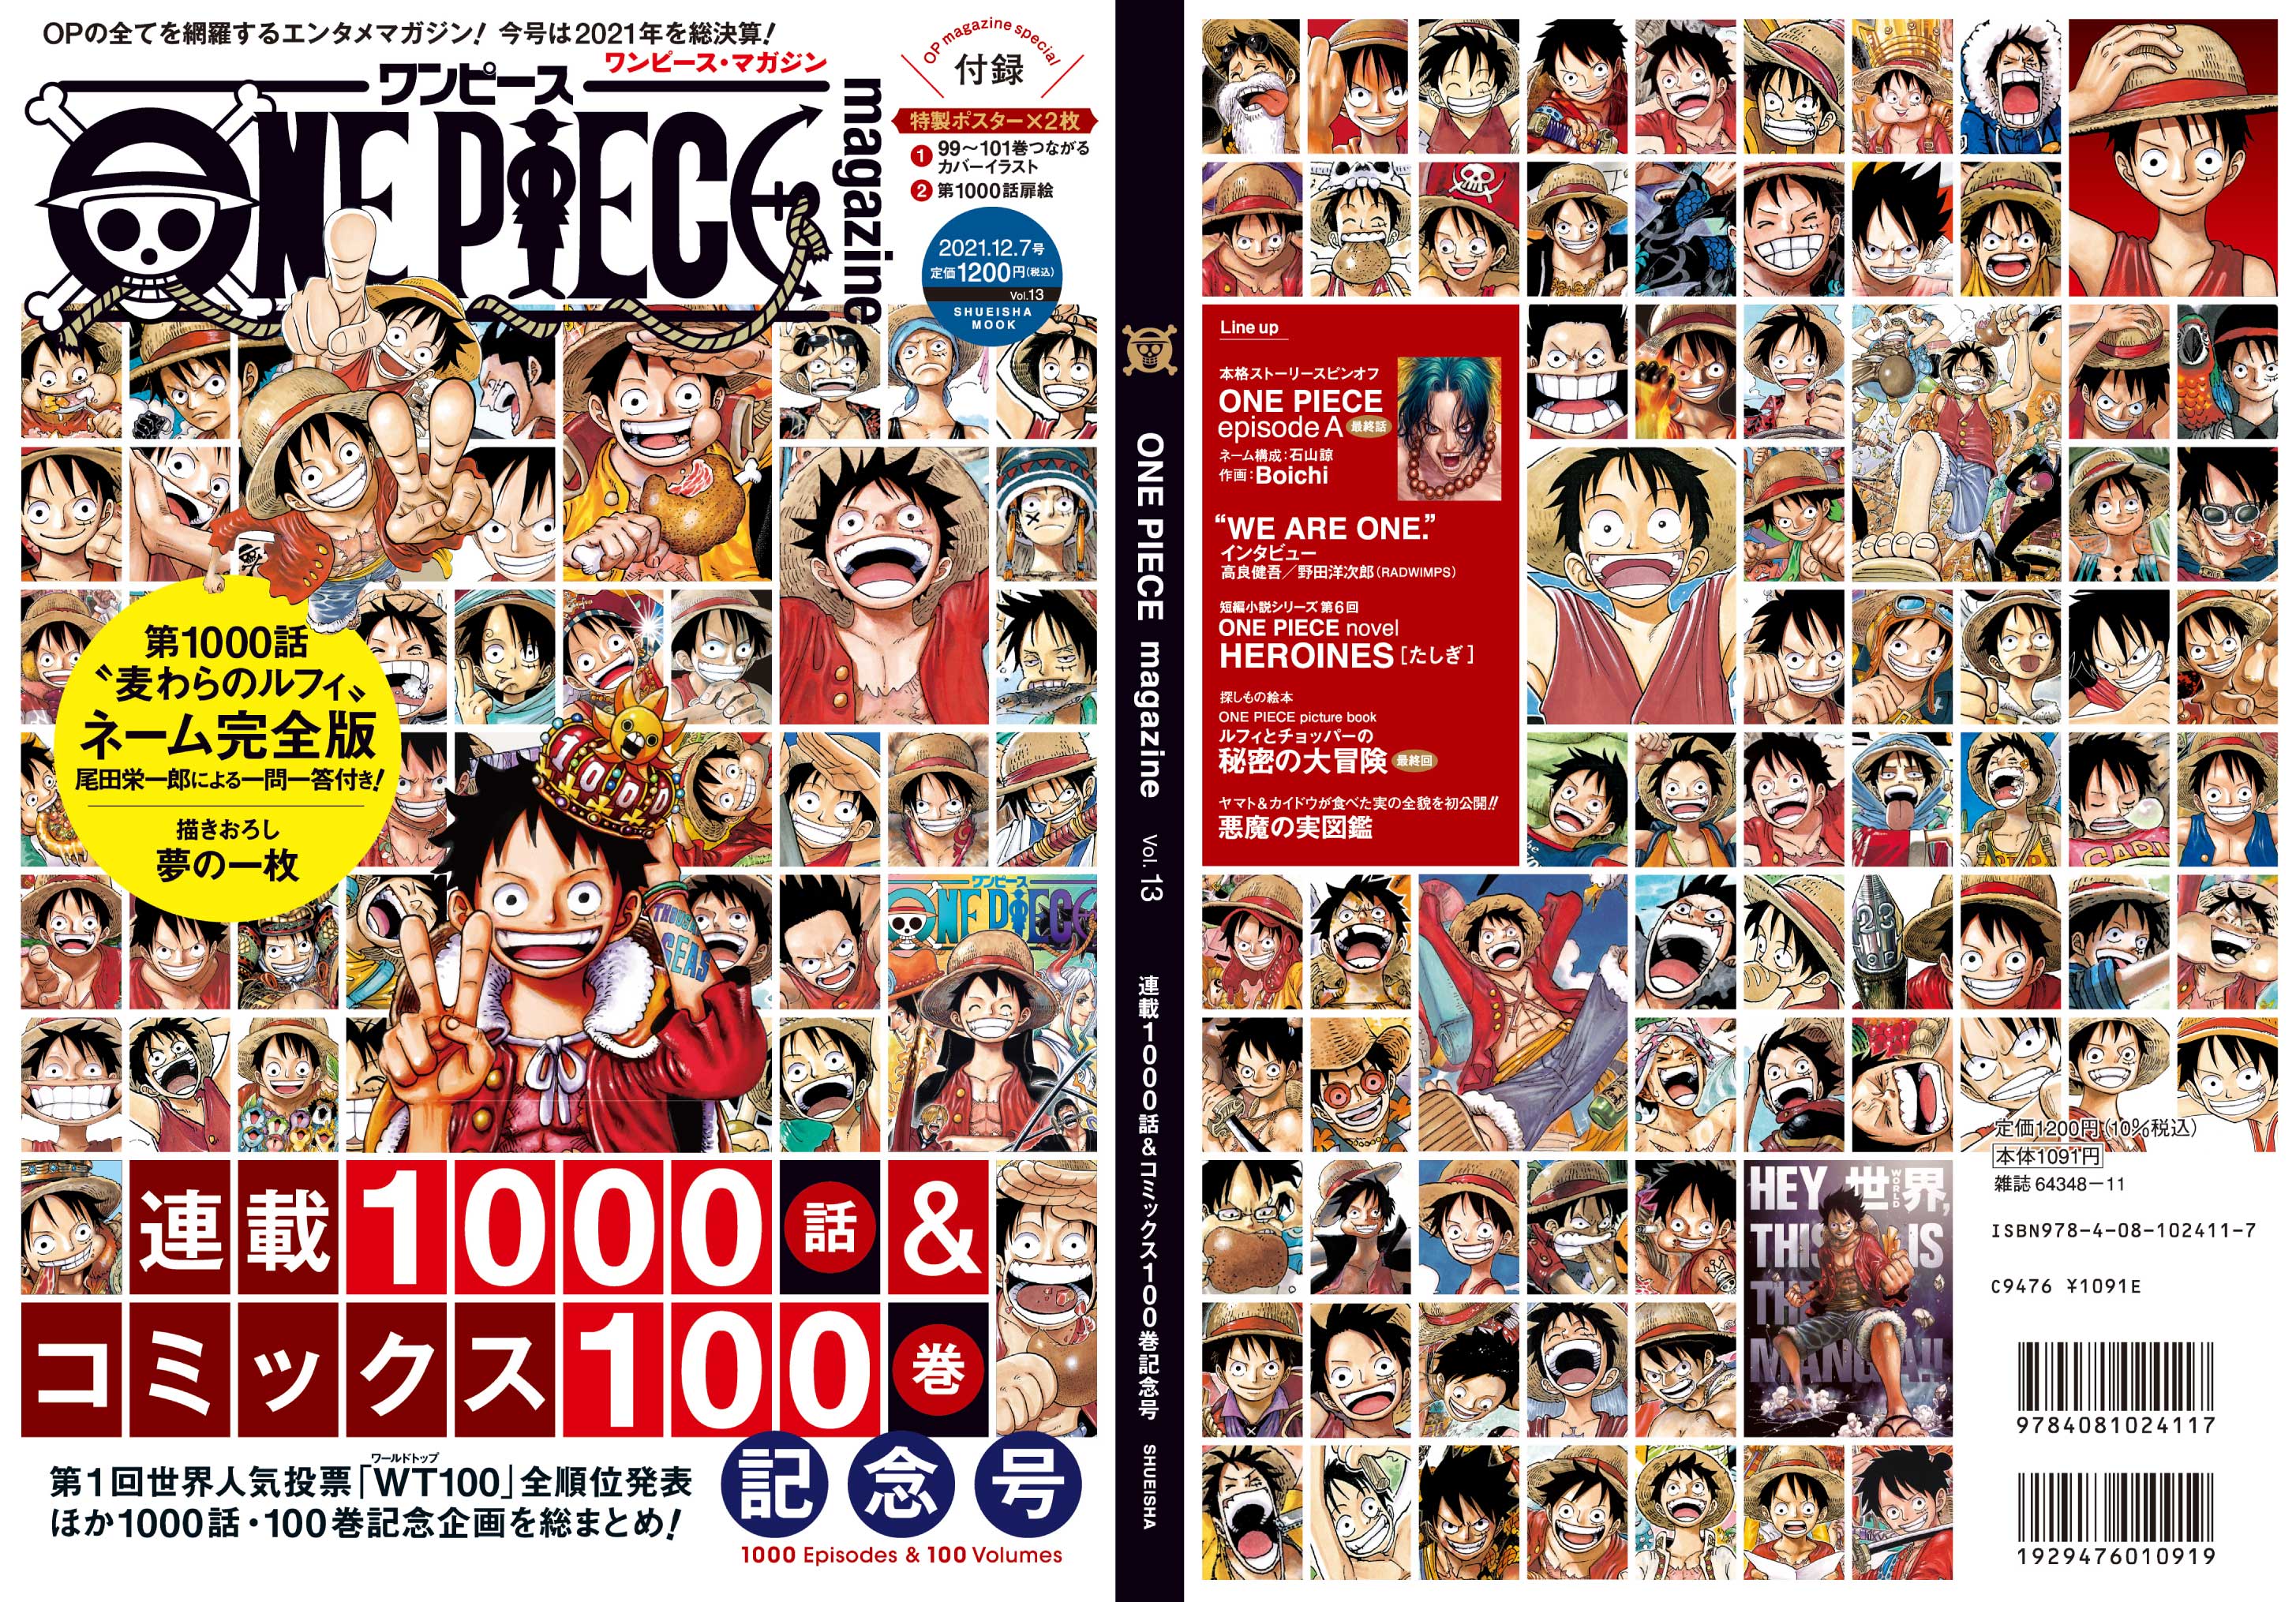 ワンピース マガジン 公式 One Piece Magazine Vol 13 ついに本日12 2発売 この1年間のあれやこれやを全力で注ぎ込みました超豪華 連載1000話 コミックス100巻記念号 です 歴代ルフィの表紙 実物ほんとにかっこいいので是非お手にとって